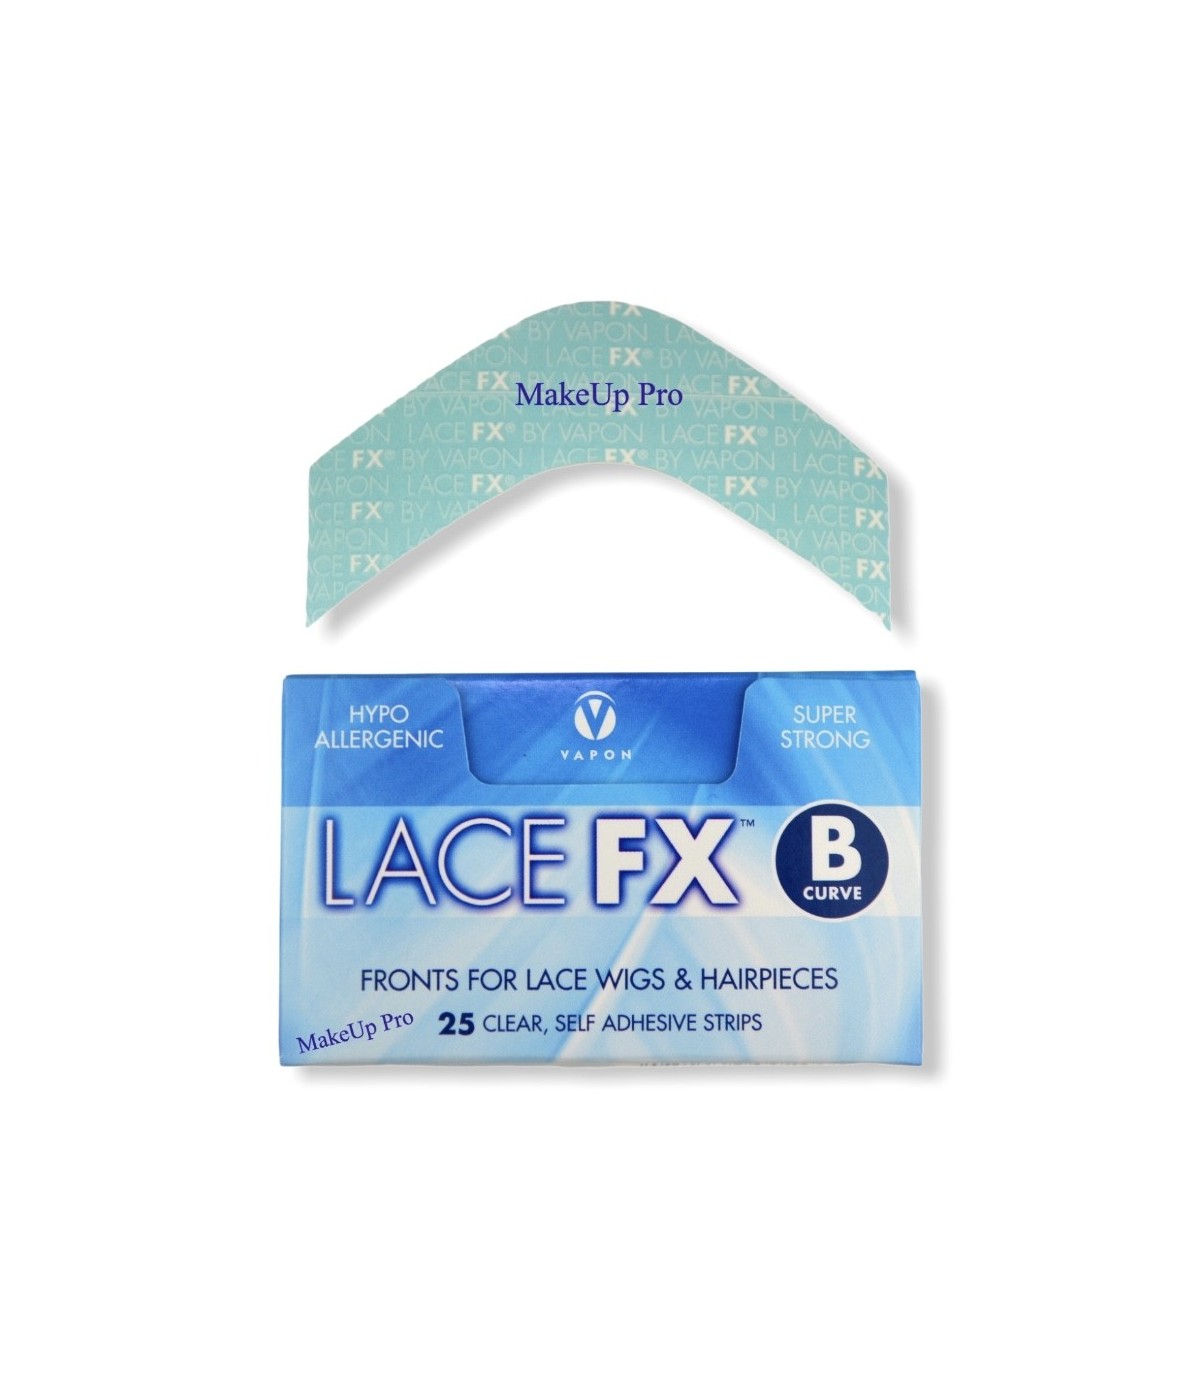 Vapon Lace FX